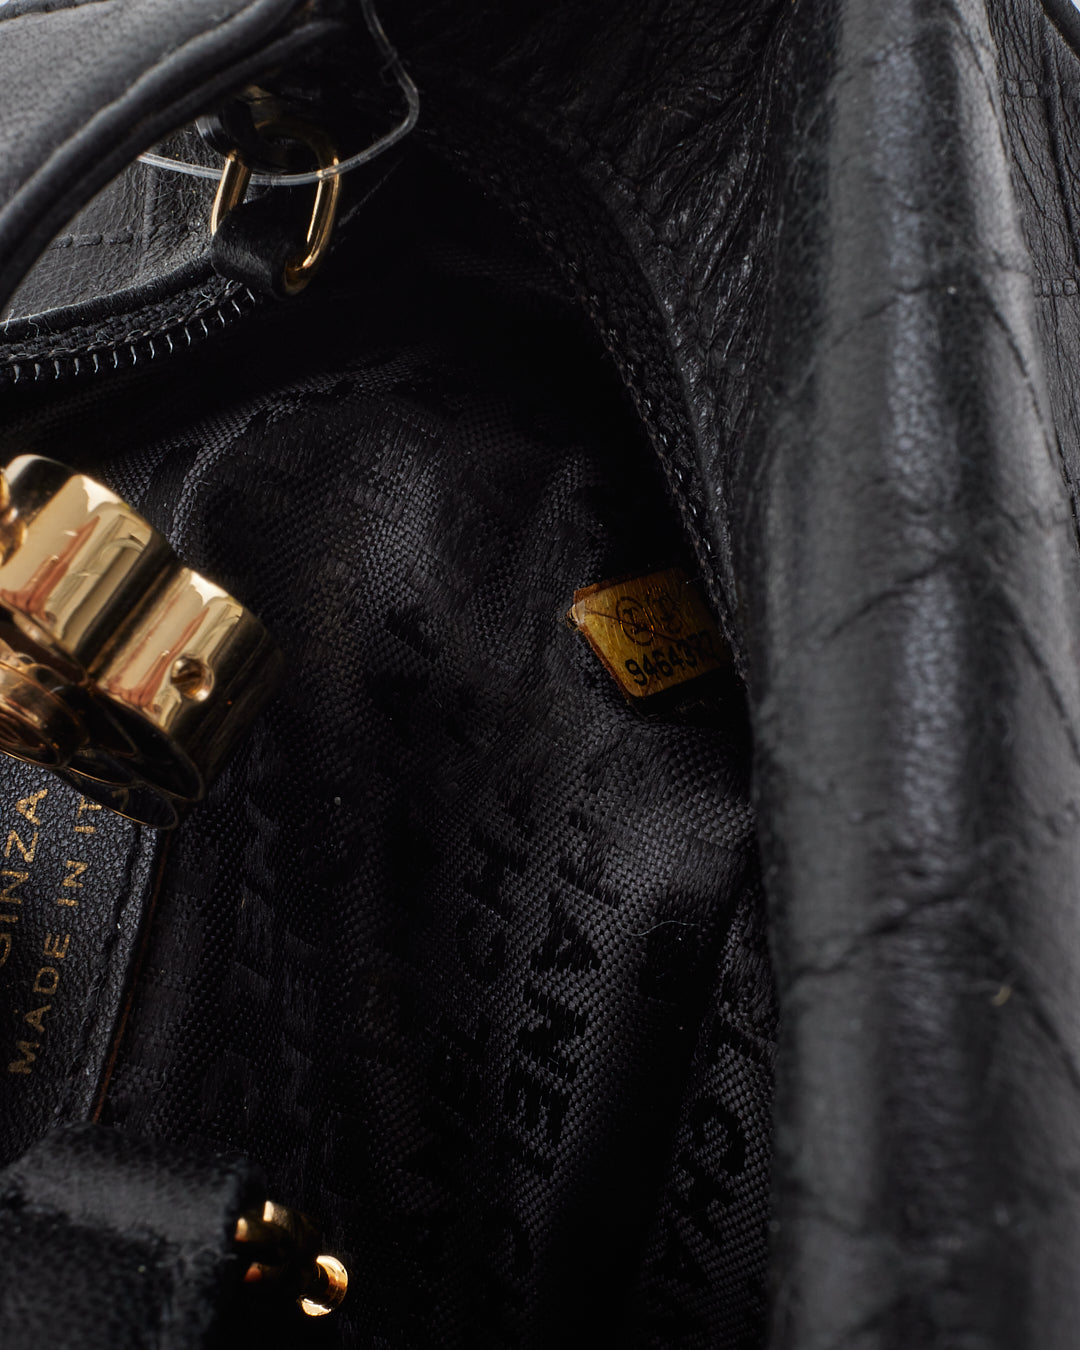 Pochette d'embrayage à poignée supérieure avec logo en cuir matelassé noir Chanel